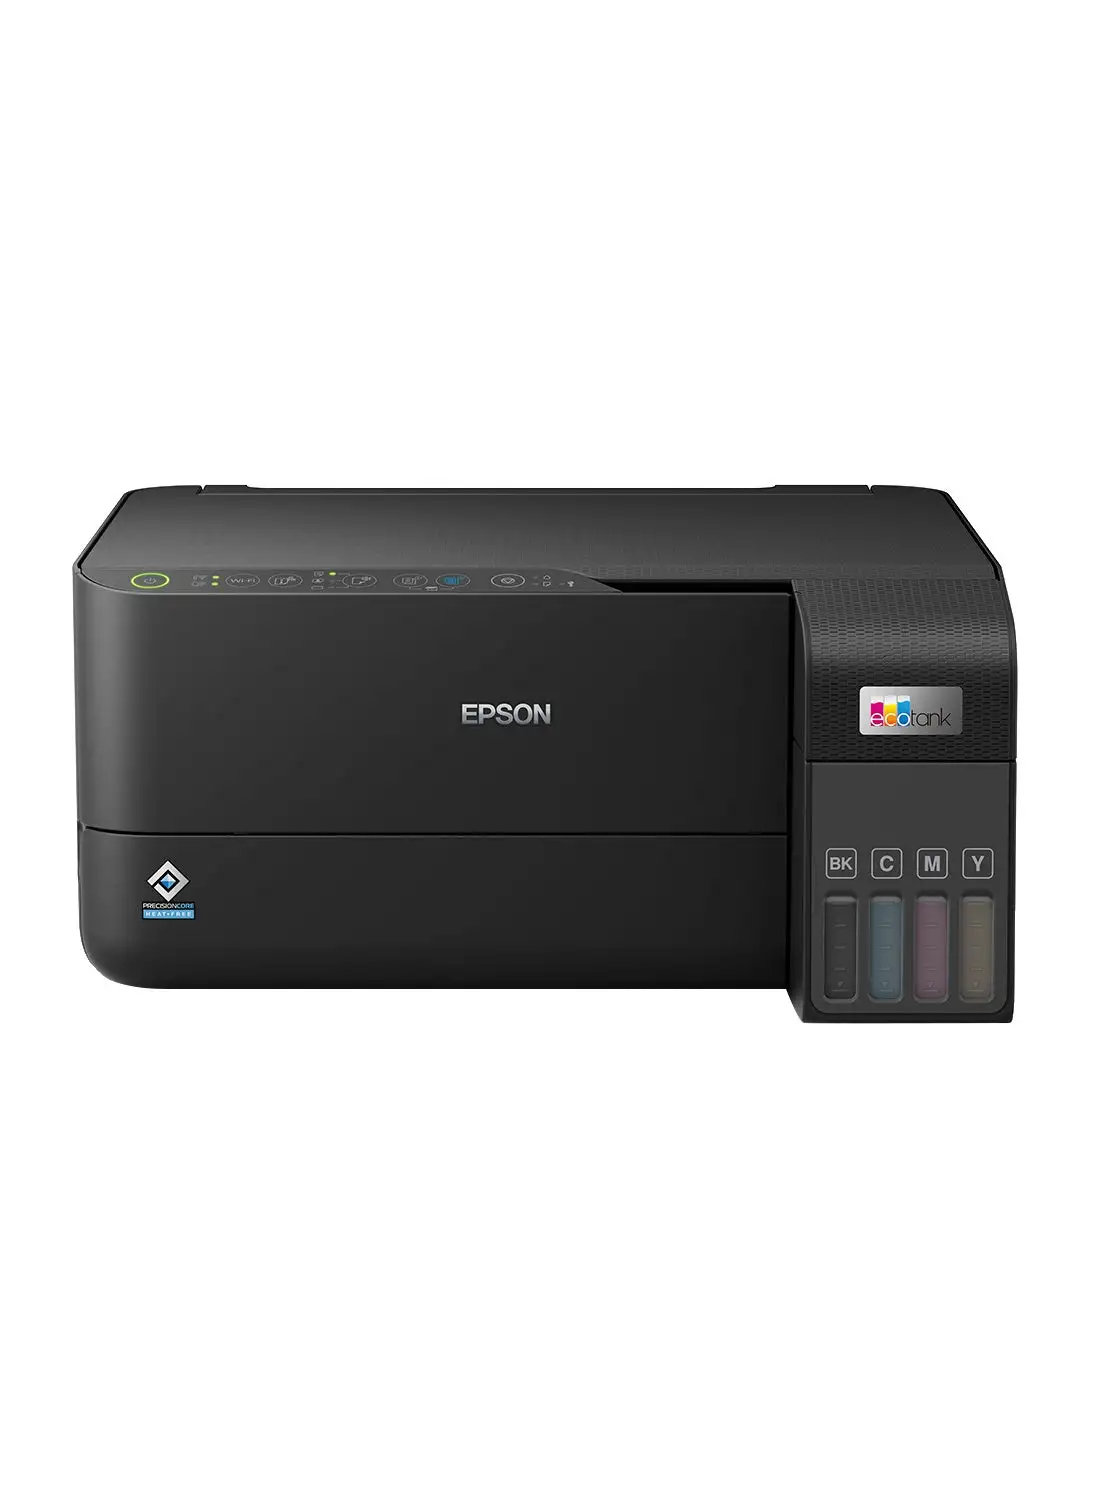 طابعة EPSON EcoTank L3550 Home Ink Tank ، طابعة A4 ملونة عالية السرعة 3 في 1 مع Wi-Fi Direct وطابعة صور واتصال ذكي للتطبيقات أسود